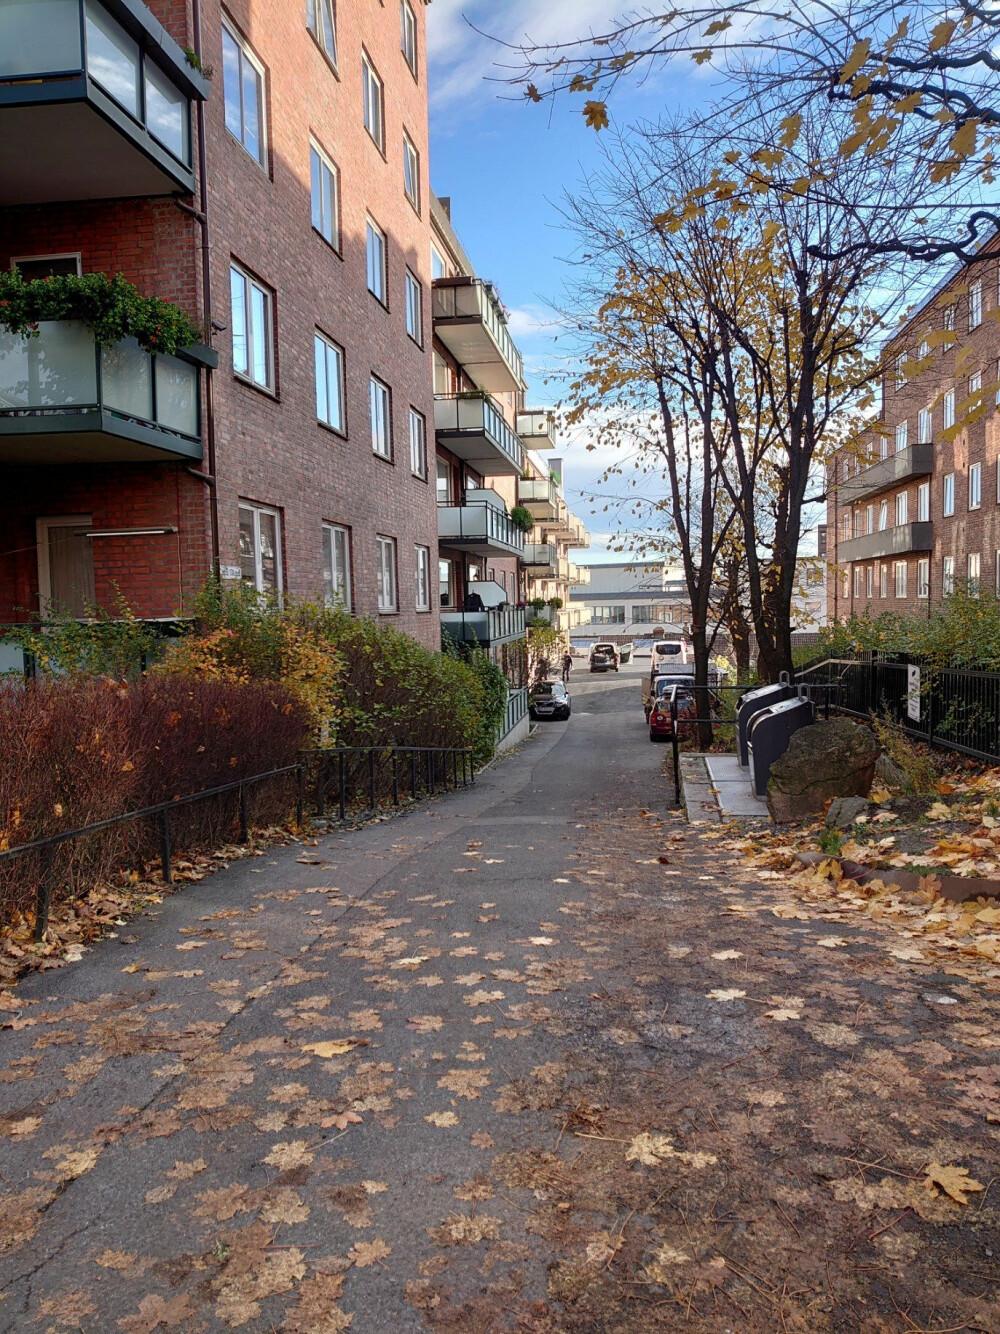 <b>HJEMMET:</b> Her i Rosenborggaten 15 bodde Ellinor Meiran. Arne Koksvik bodde i blokken ved siden av.